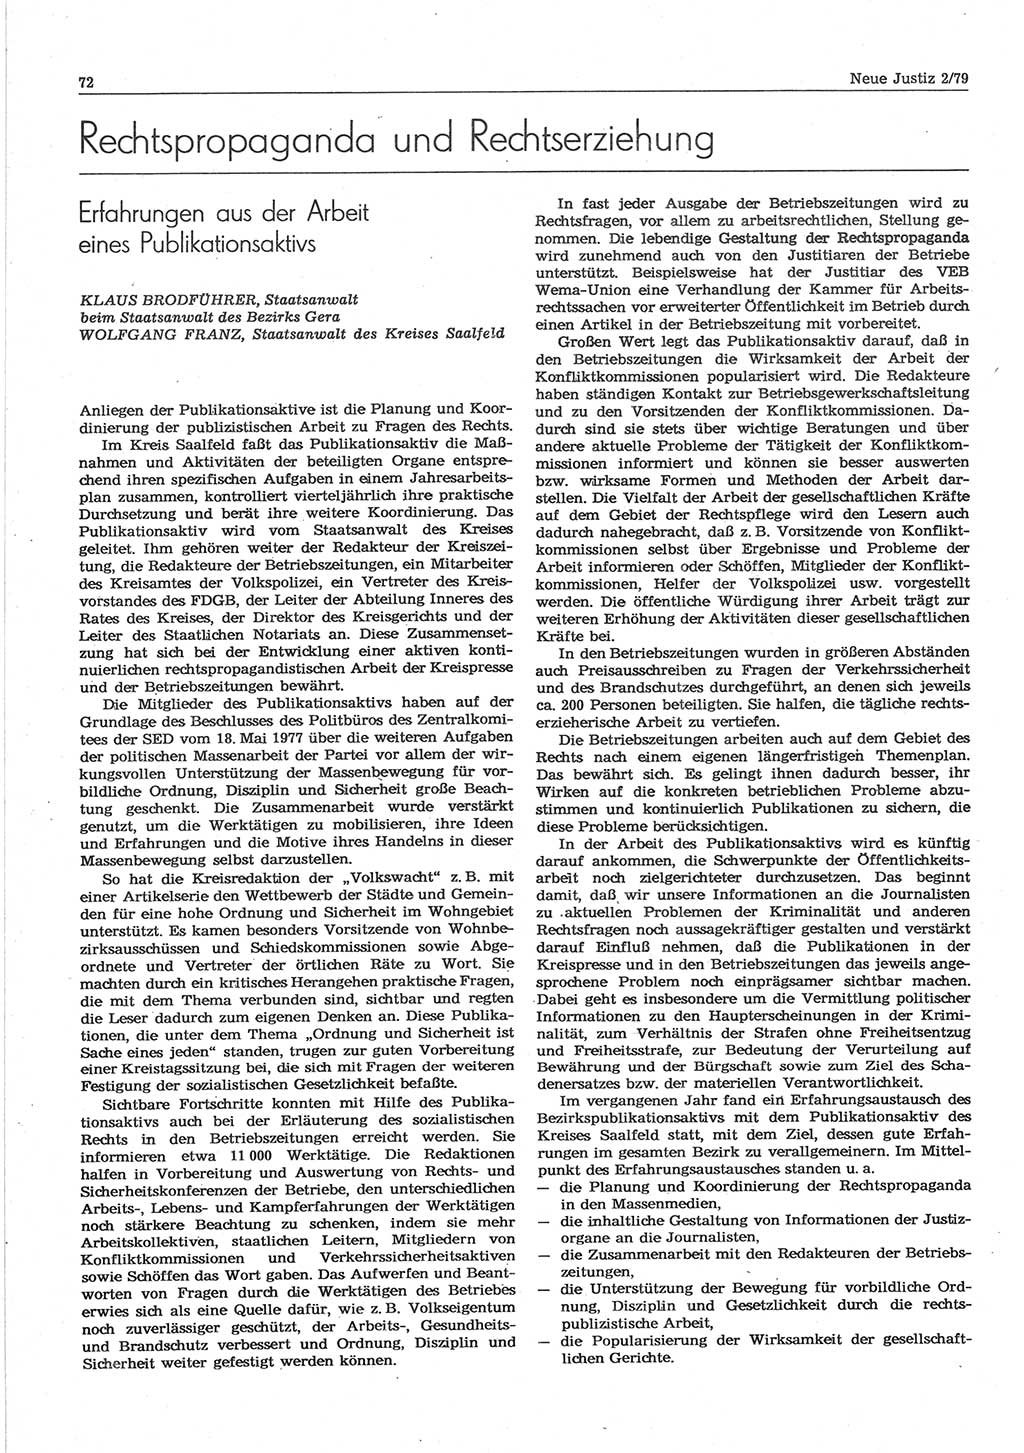 Neue Justiz (NJ), Zeitschrift für sozialistisches Recht und Gesetzlichkeit [Deutsche Demokratische Republik (DDR)], 33. Jahrgang 1979, Seite 72 (NJ DDR 1979, S. 72)